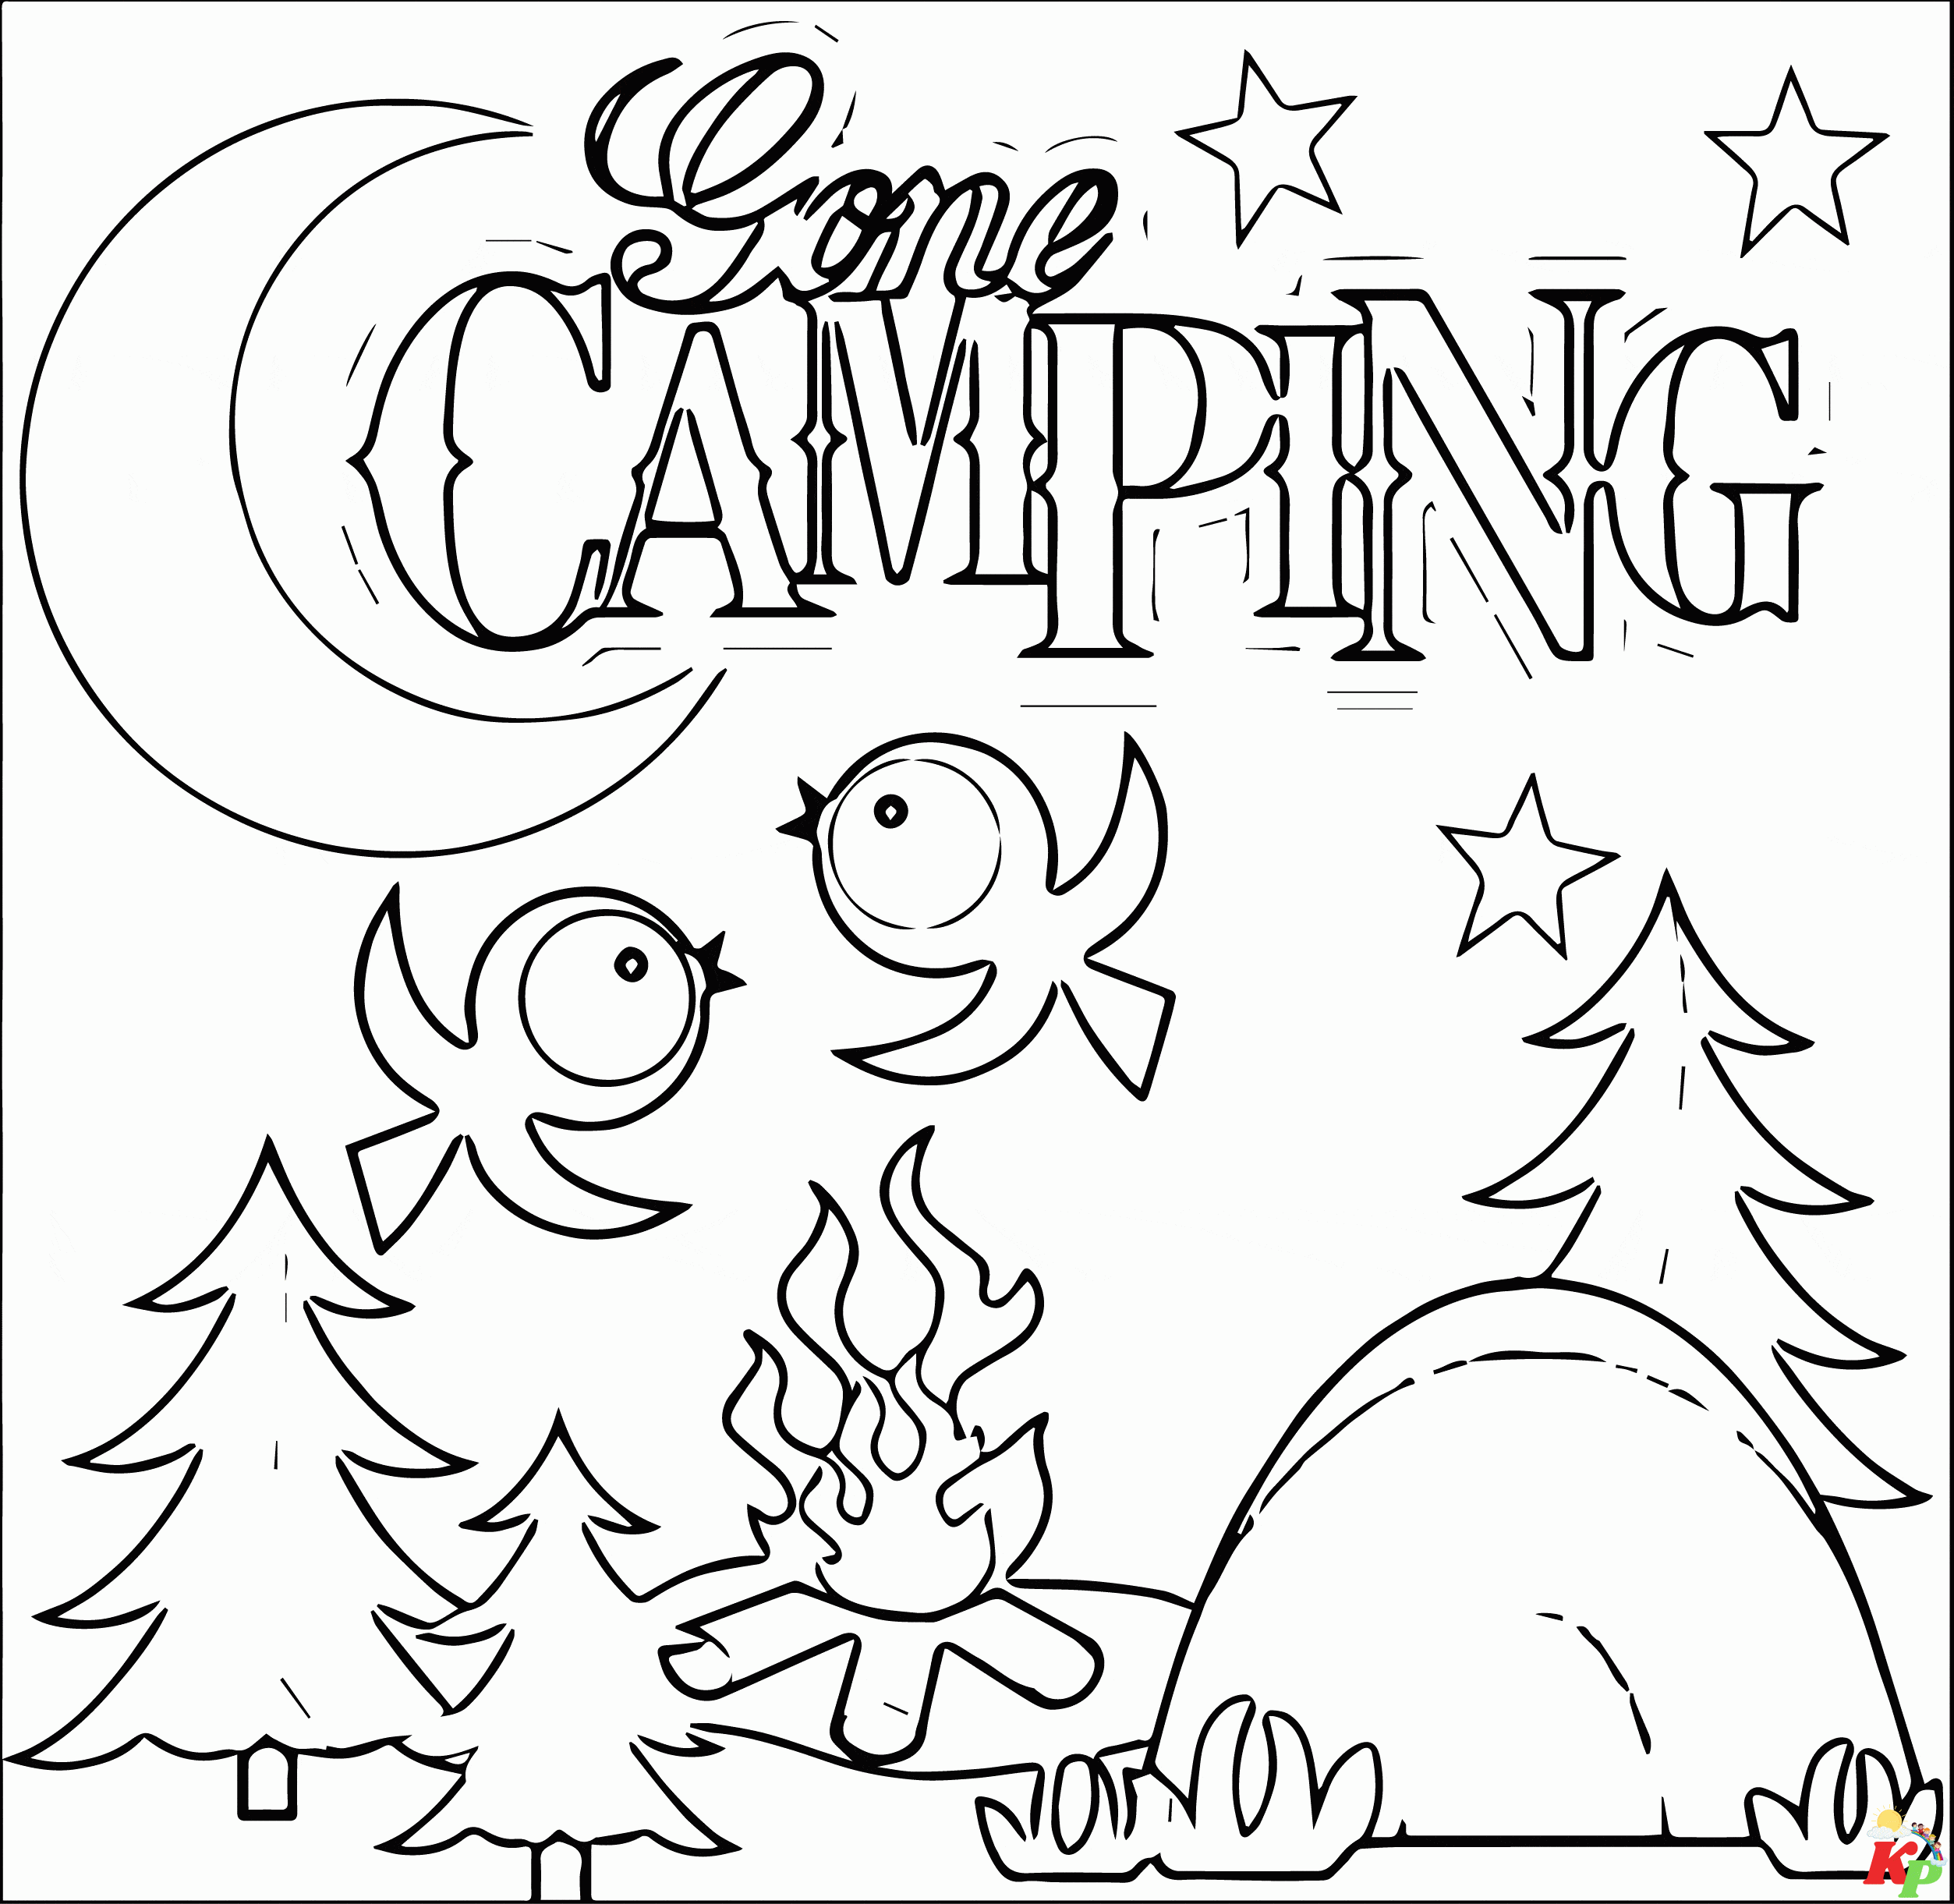 Camping15